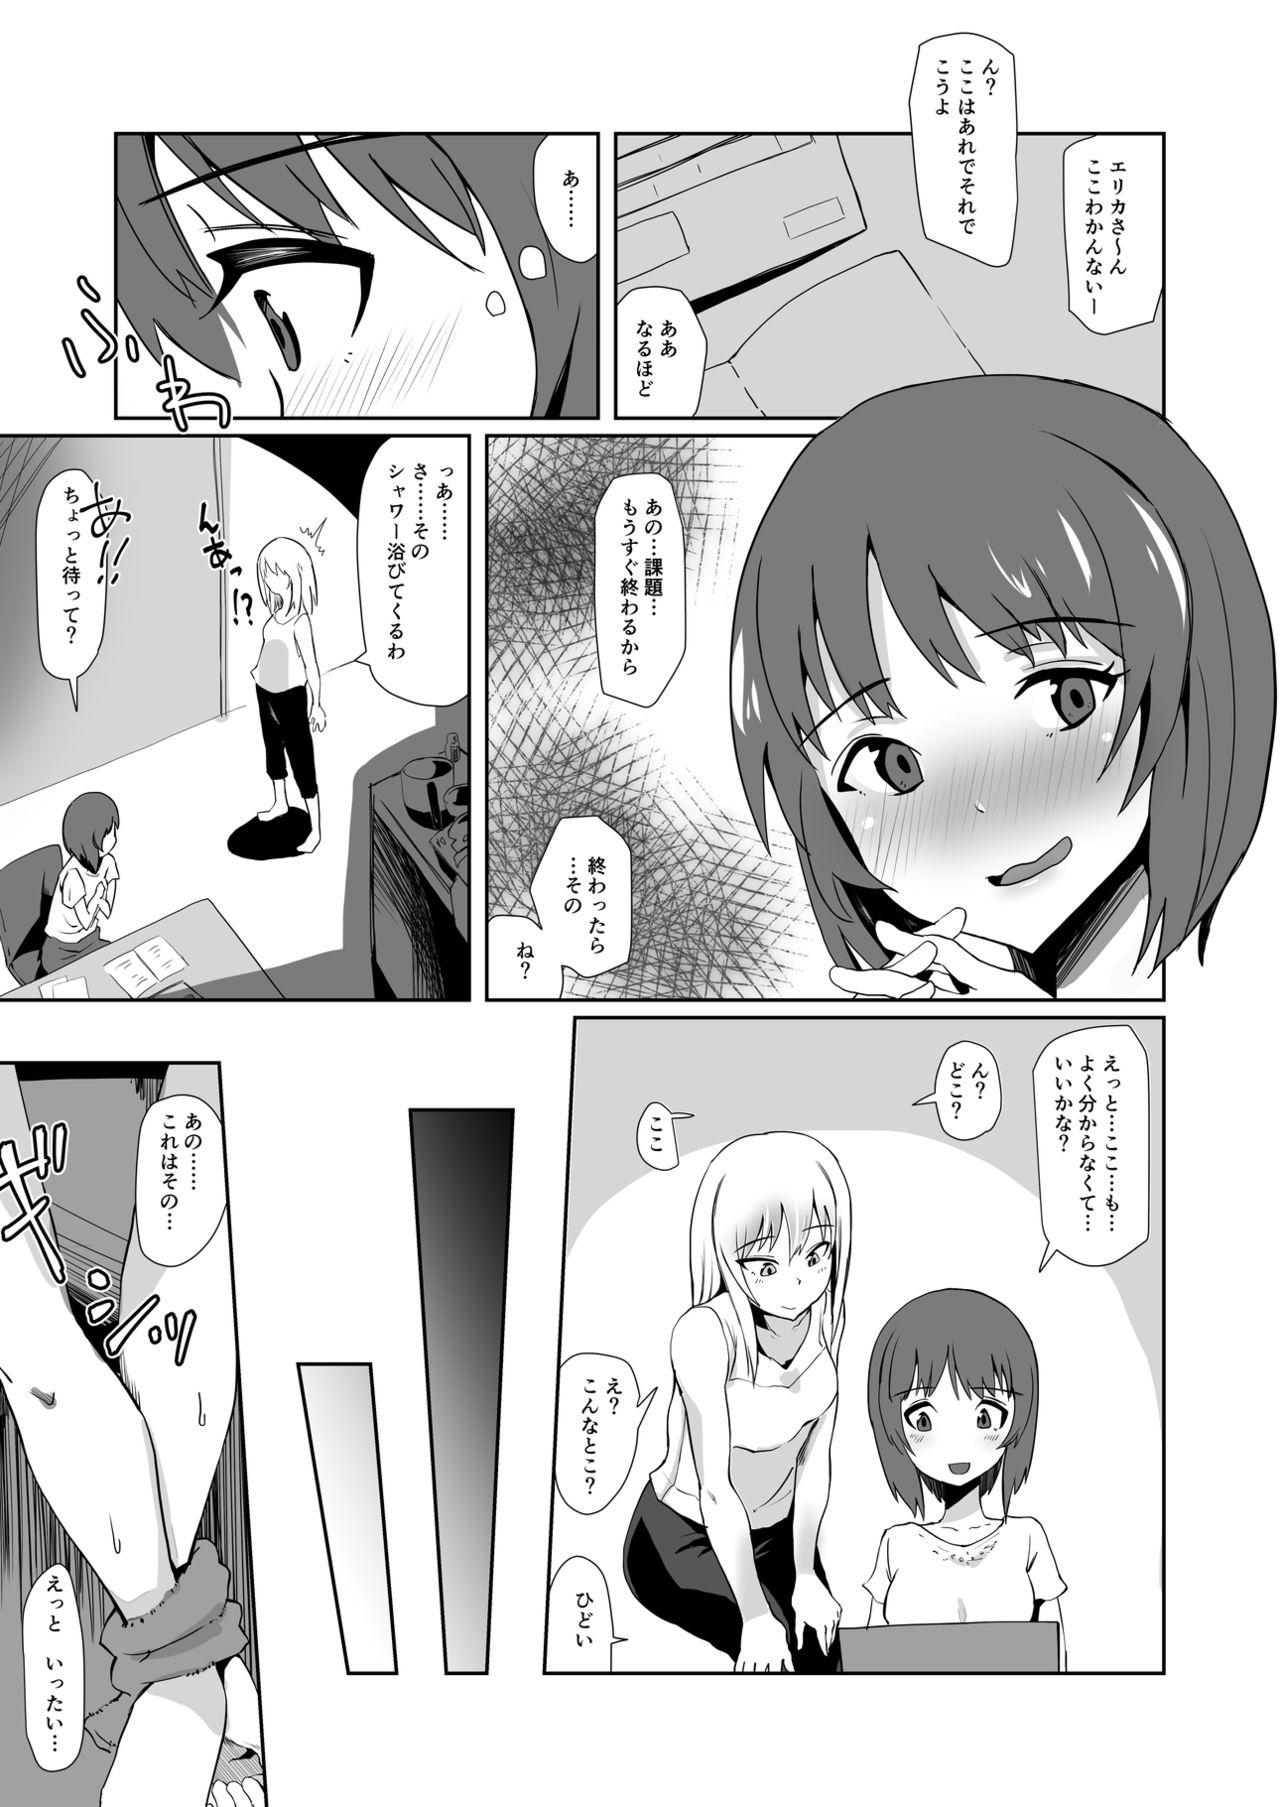 Asslicking Yoru ni Tokeau - Girls und panzer Leggings - Page 4